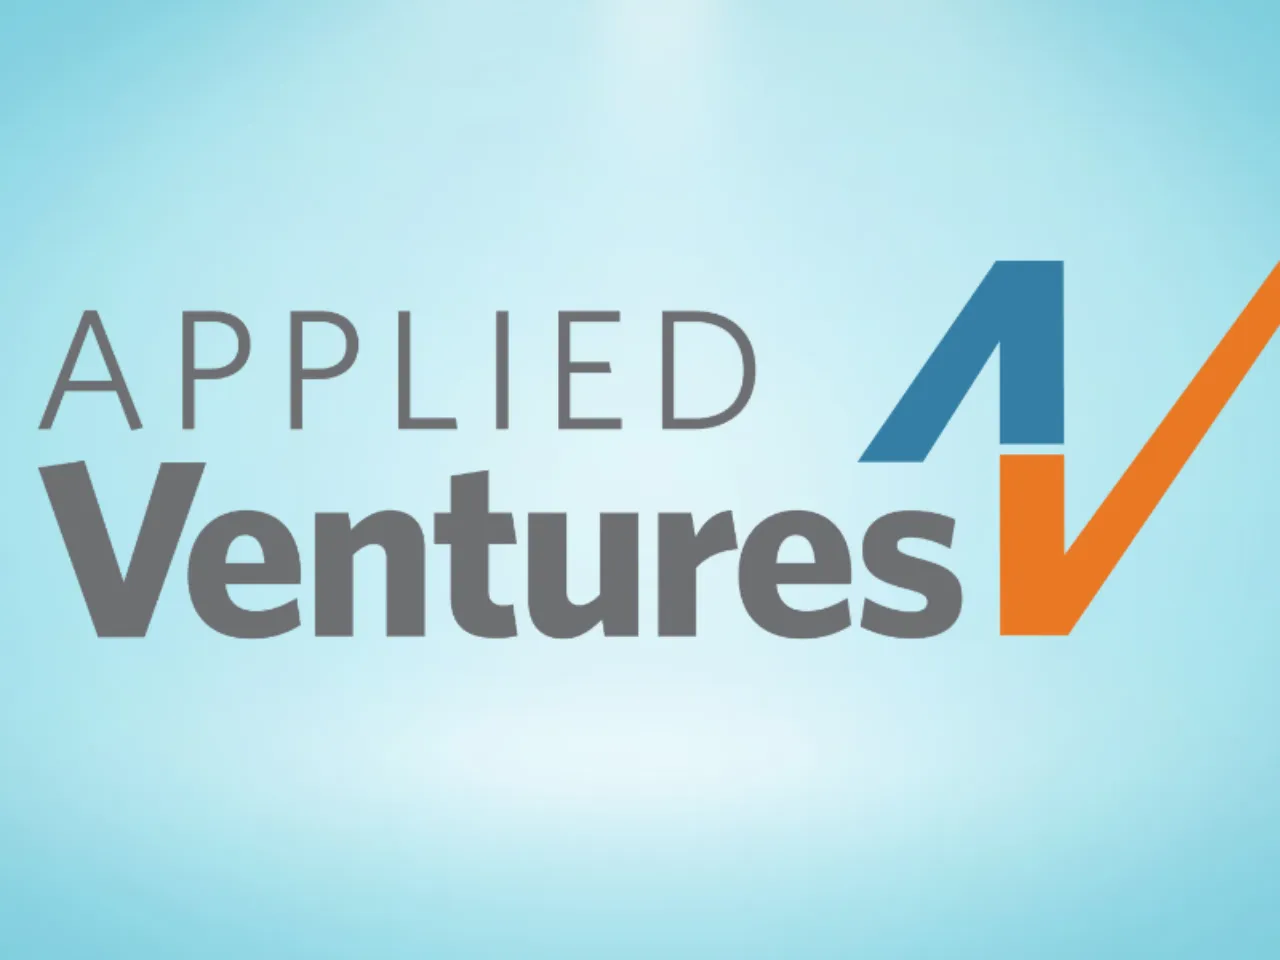 Applied Ventures